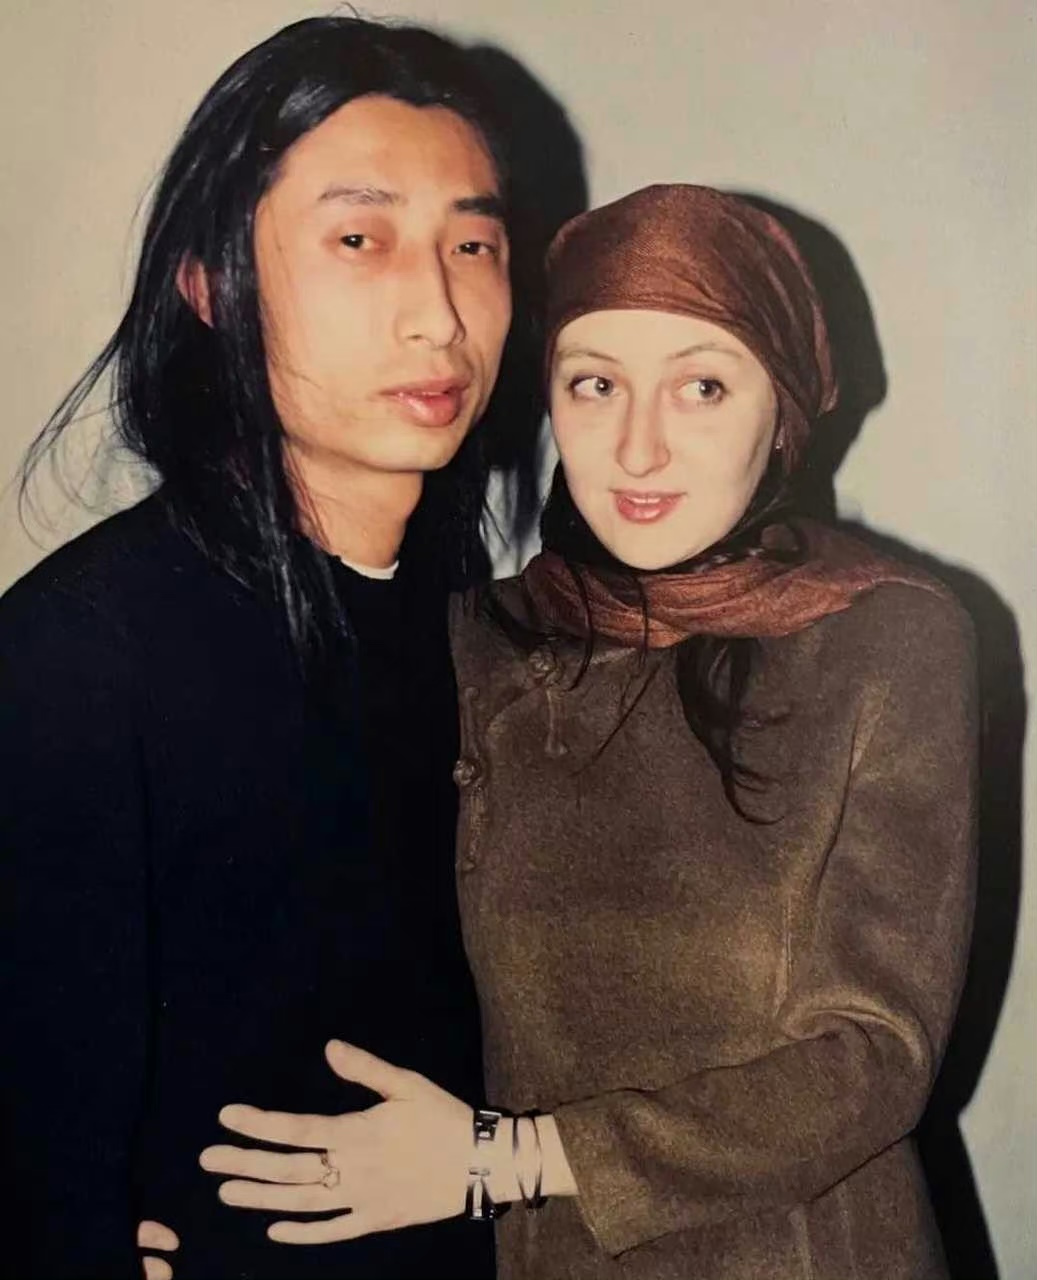 摇滚明星谢天笑与妻子付兰(意大利籍)合照,90年代